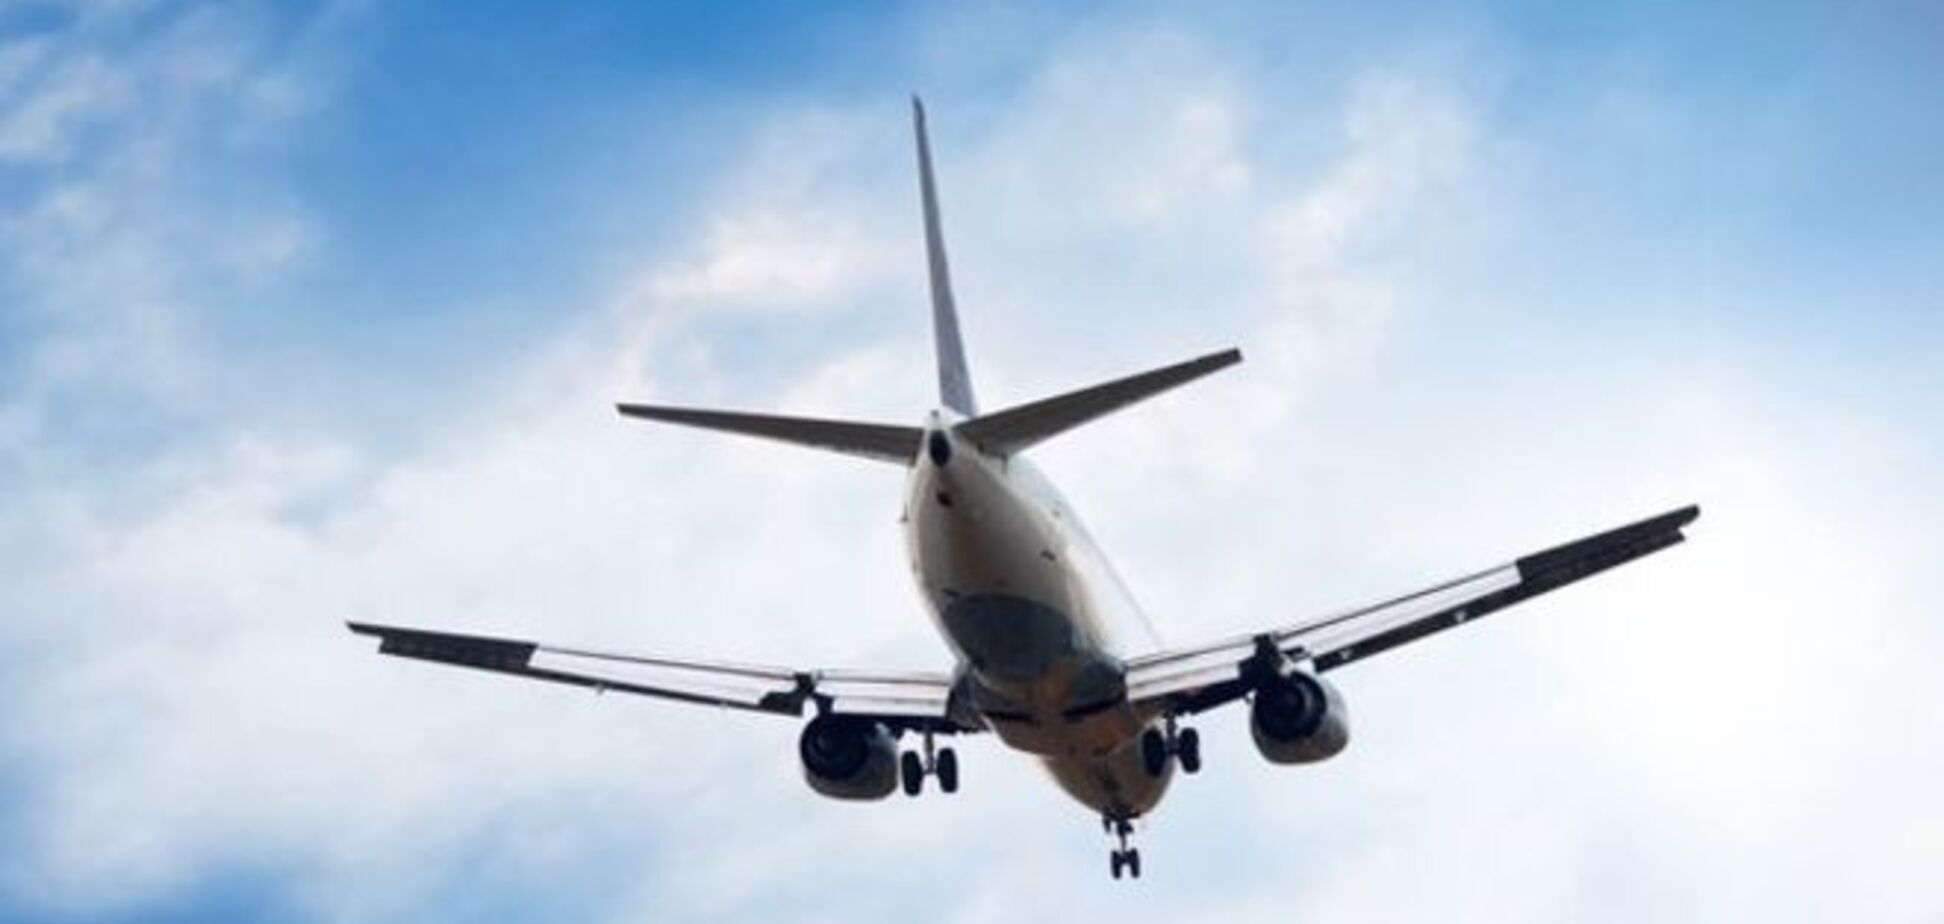 Госавиаслужба будет предоставлять права на международные авиаперевозки на базе 6 критериев оценки